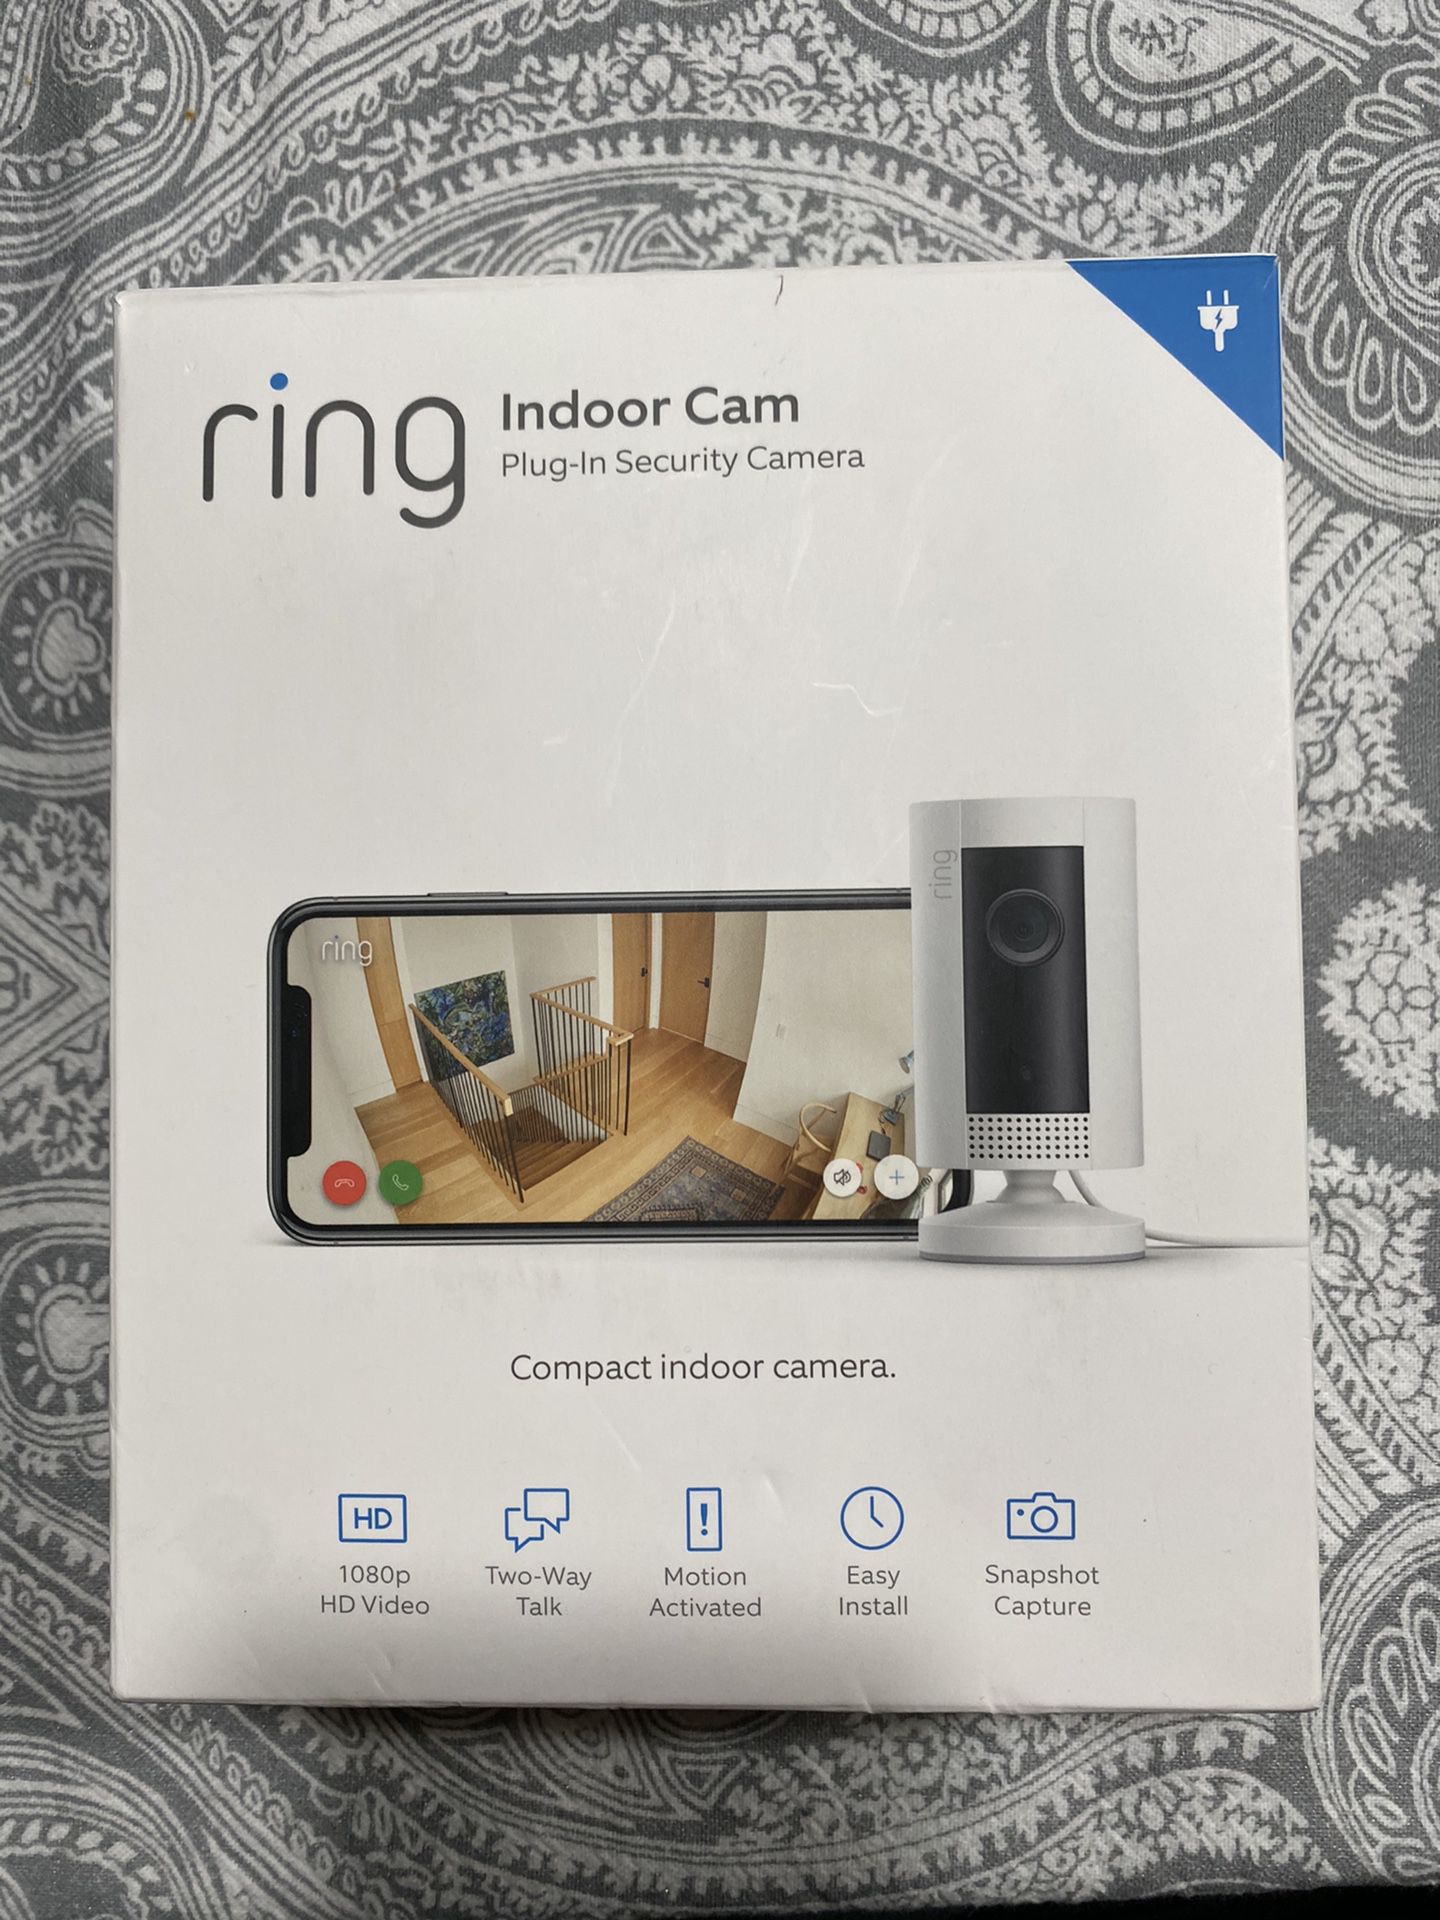 Ring Indoor Cam